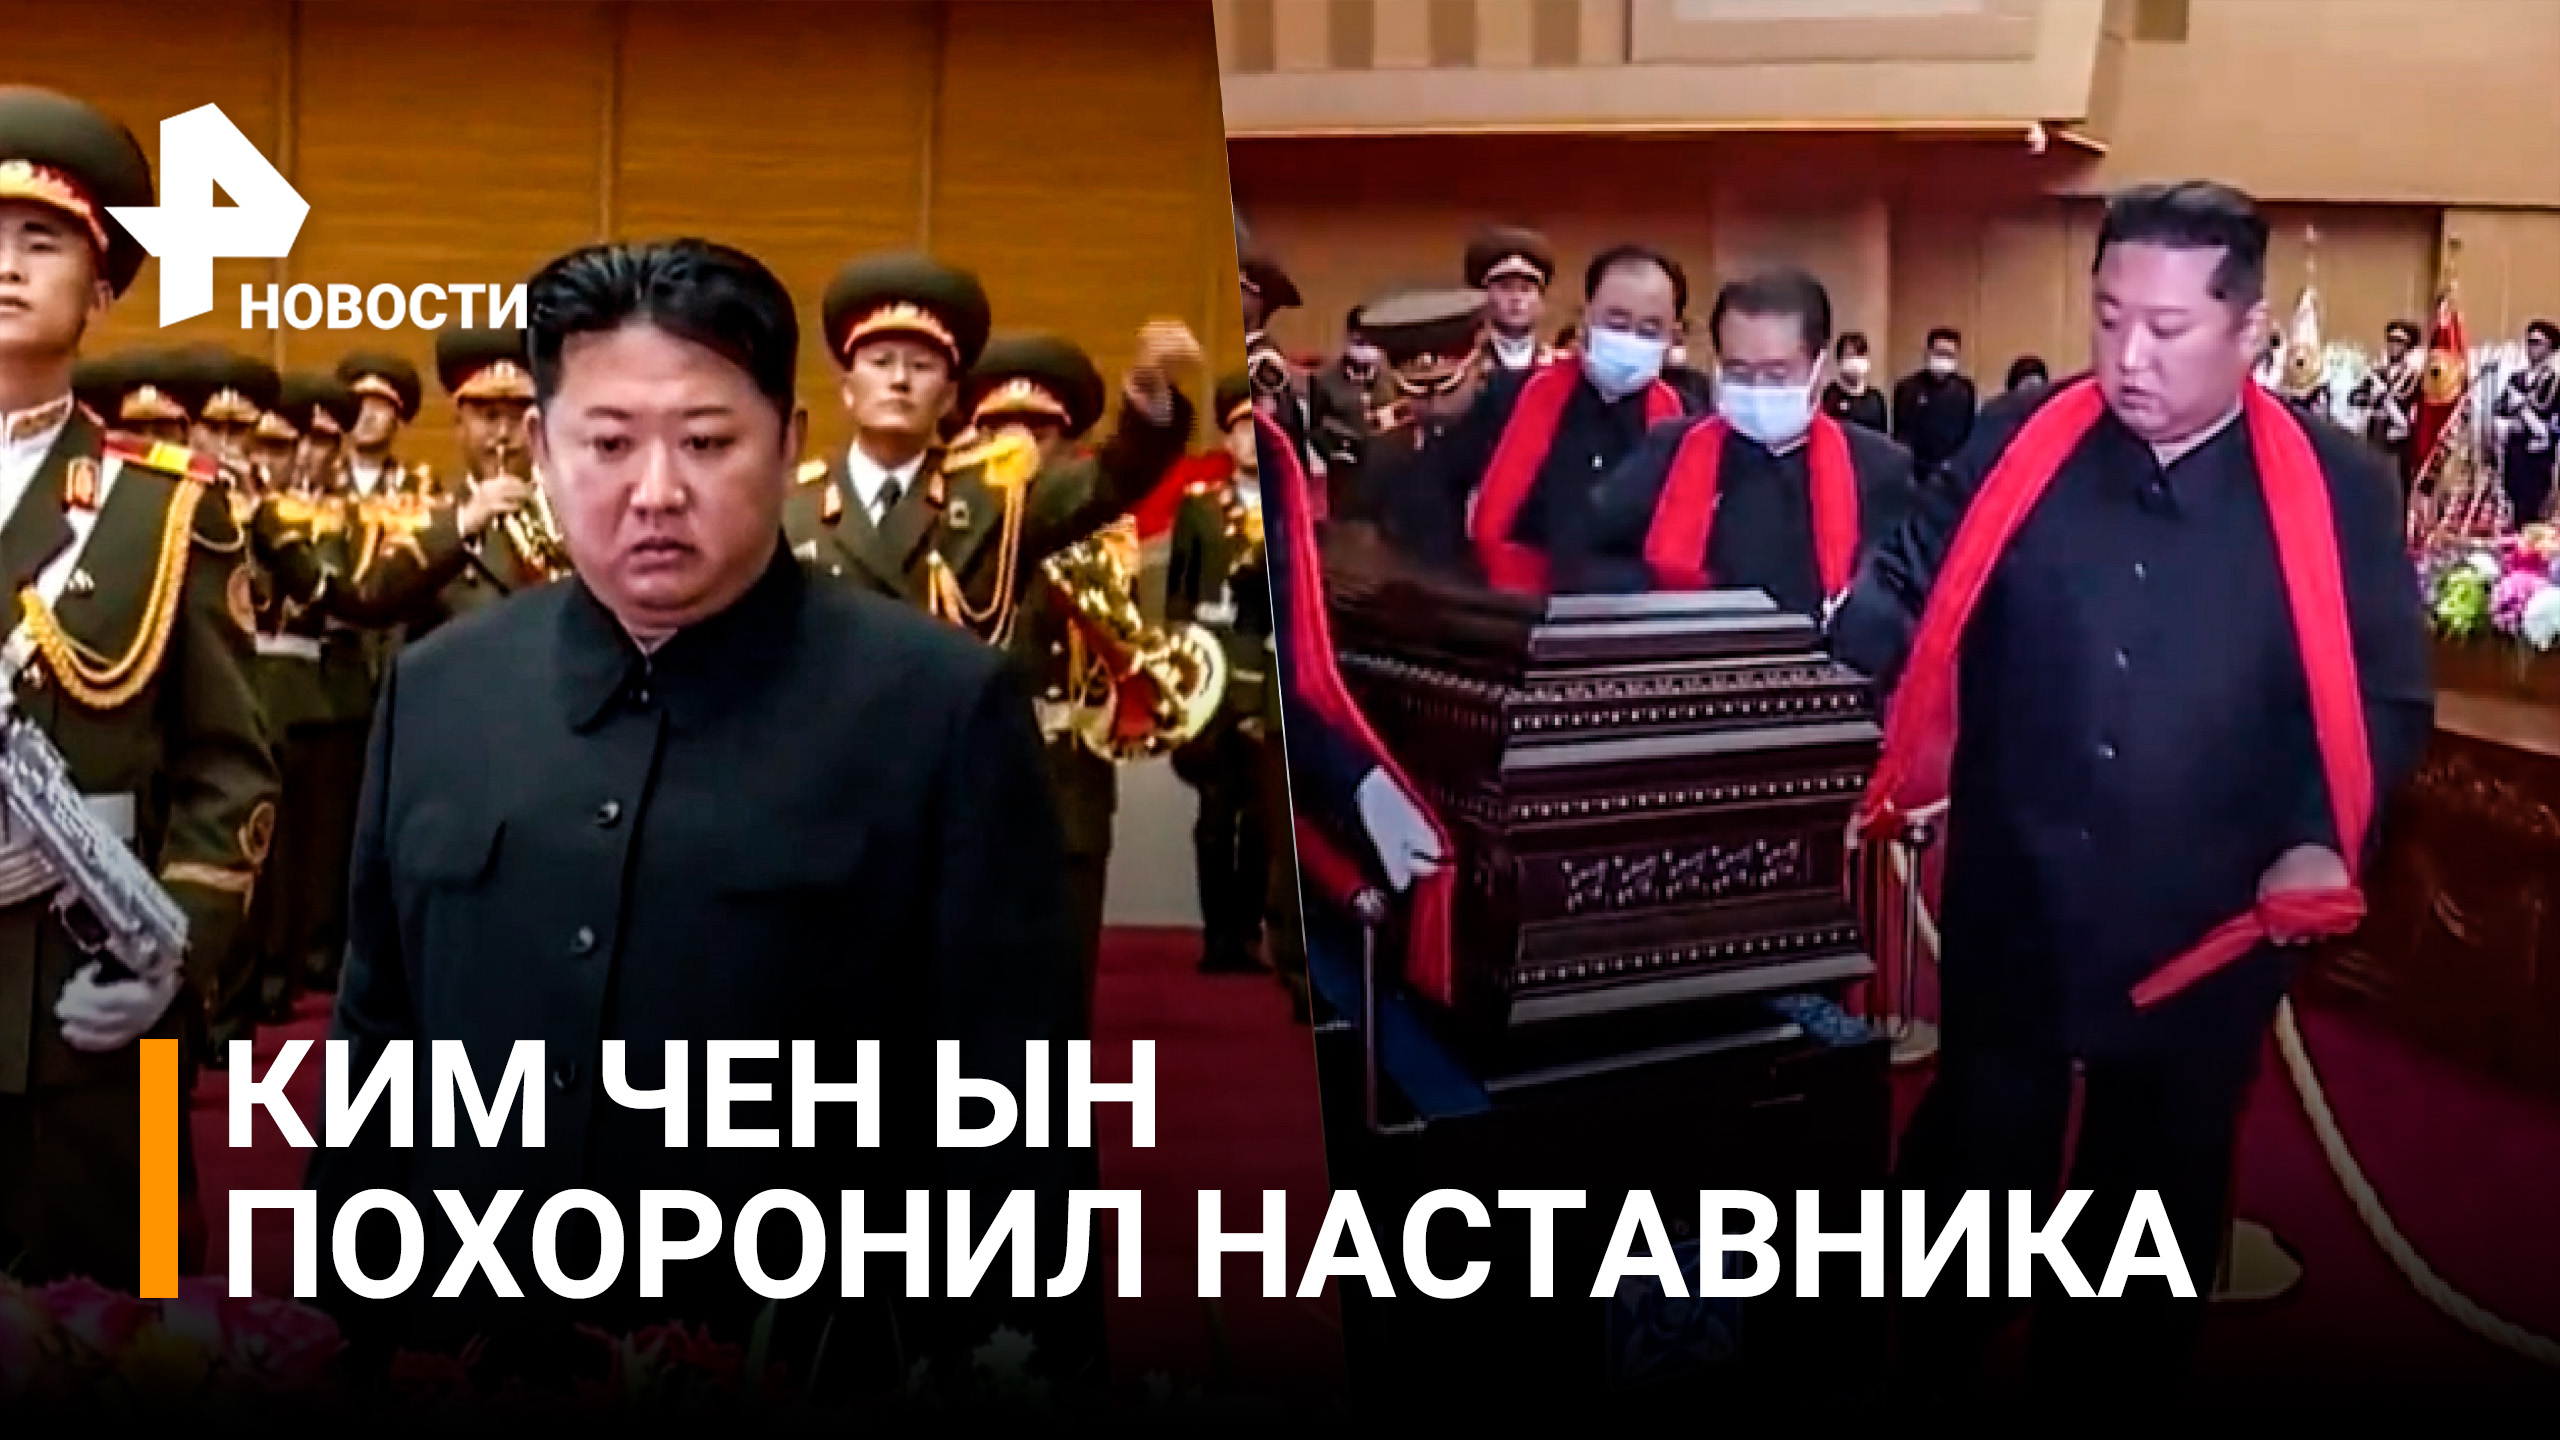 Ким Чен Ын нес гроб на похоронах своего наставника и расплакался на прощании / РЕН Новости